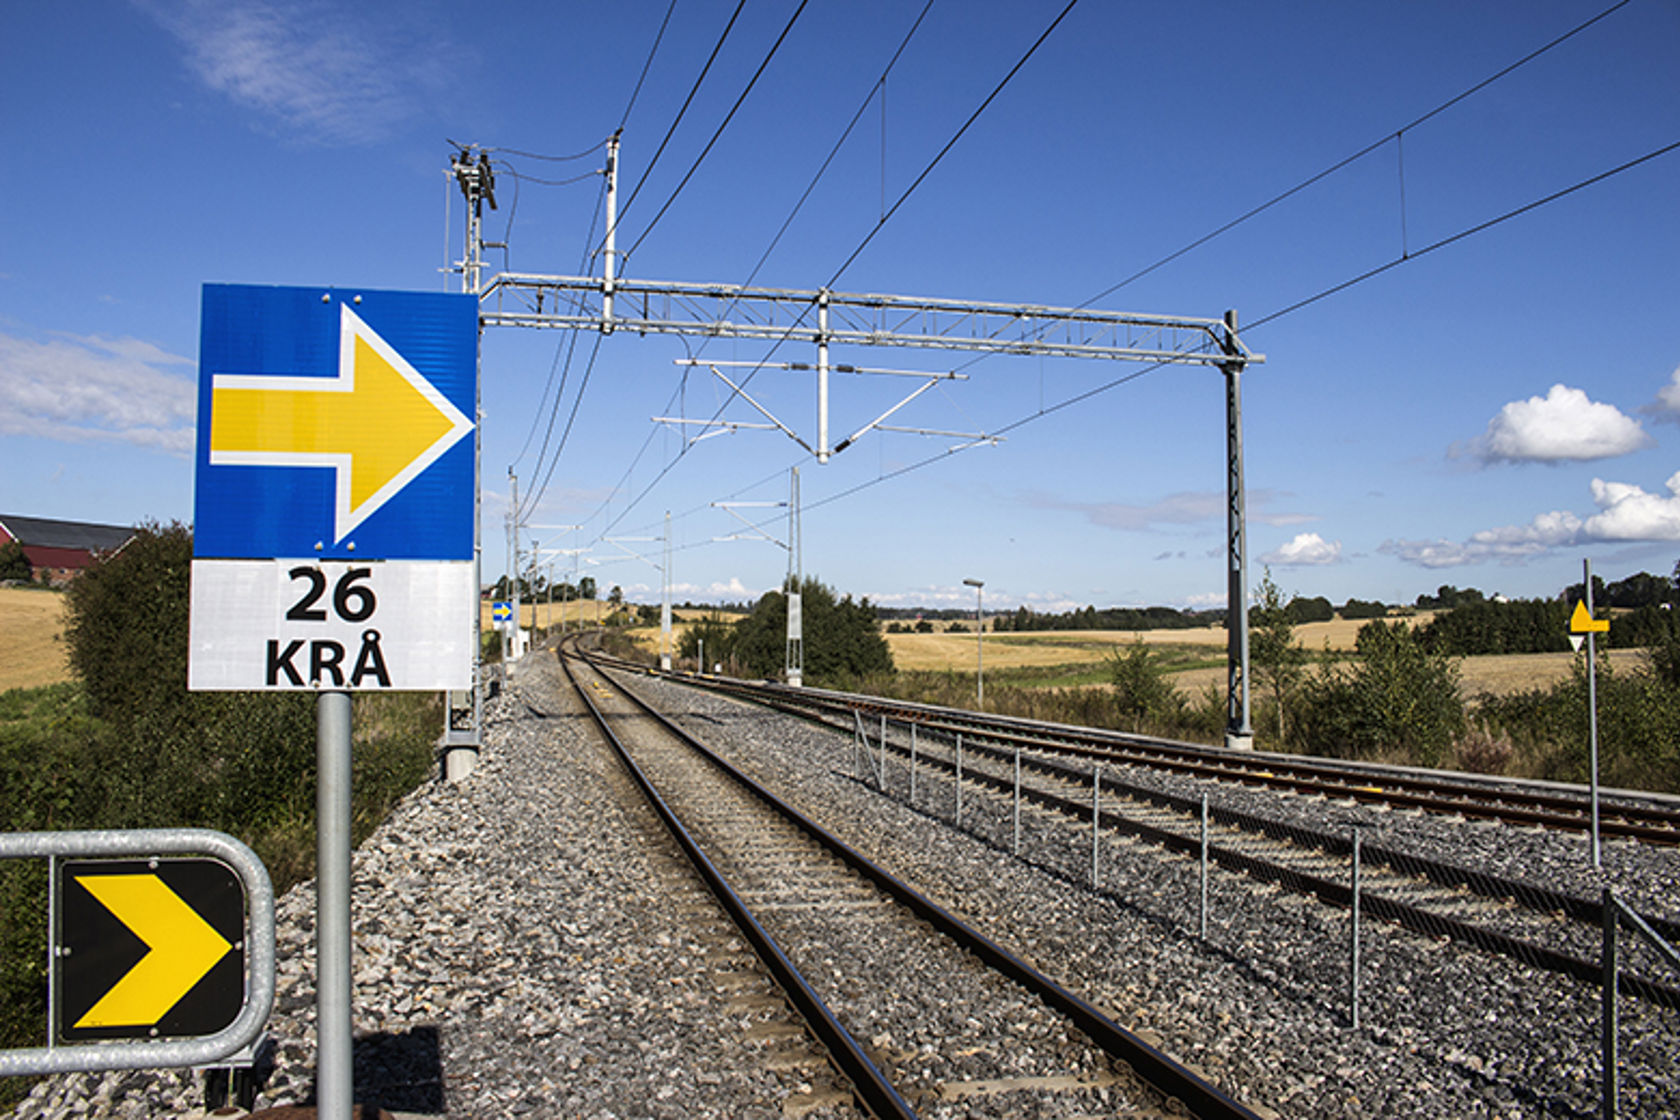 Bildet viser en jernbanestrekning med jernbanespor som ligger over et flatt jorde